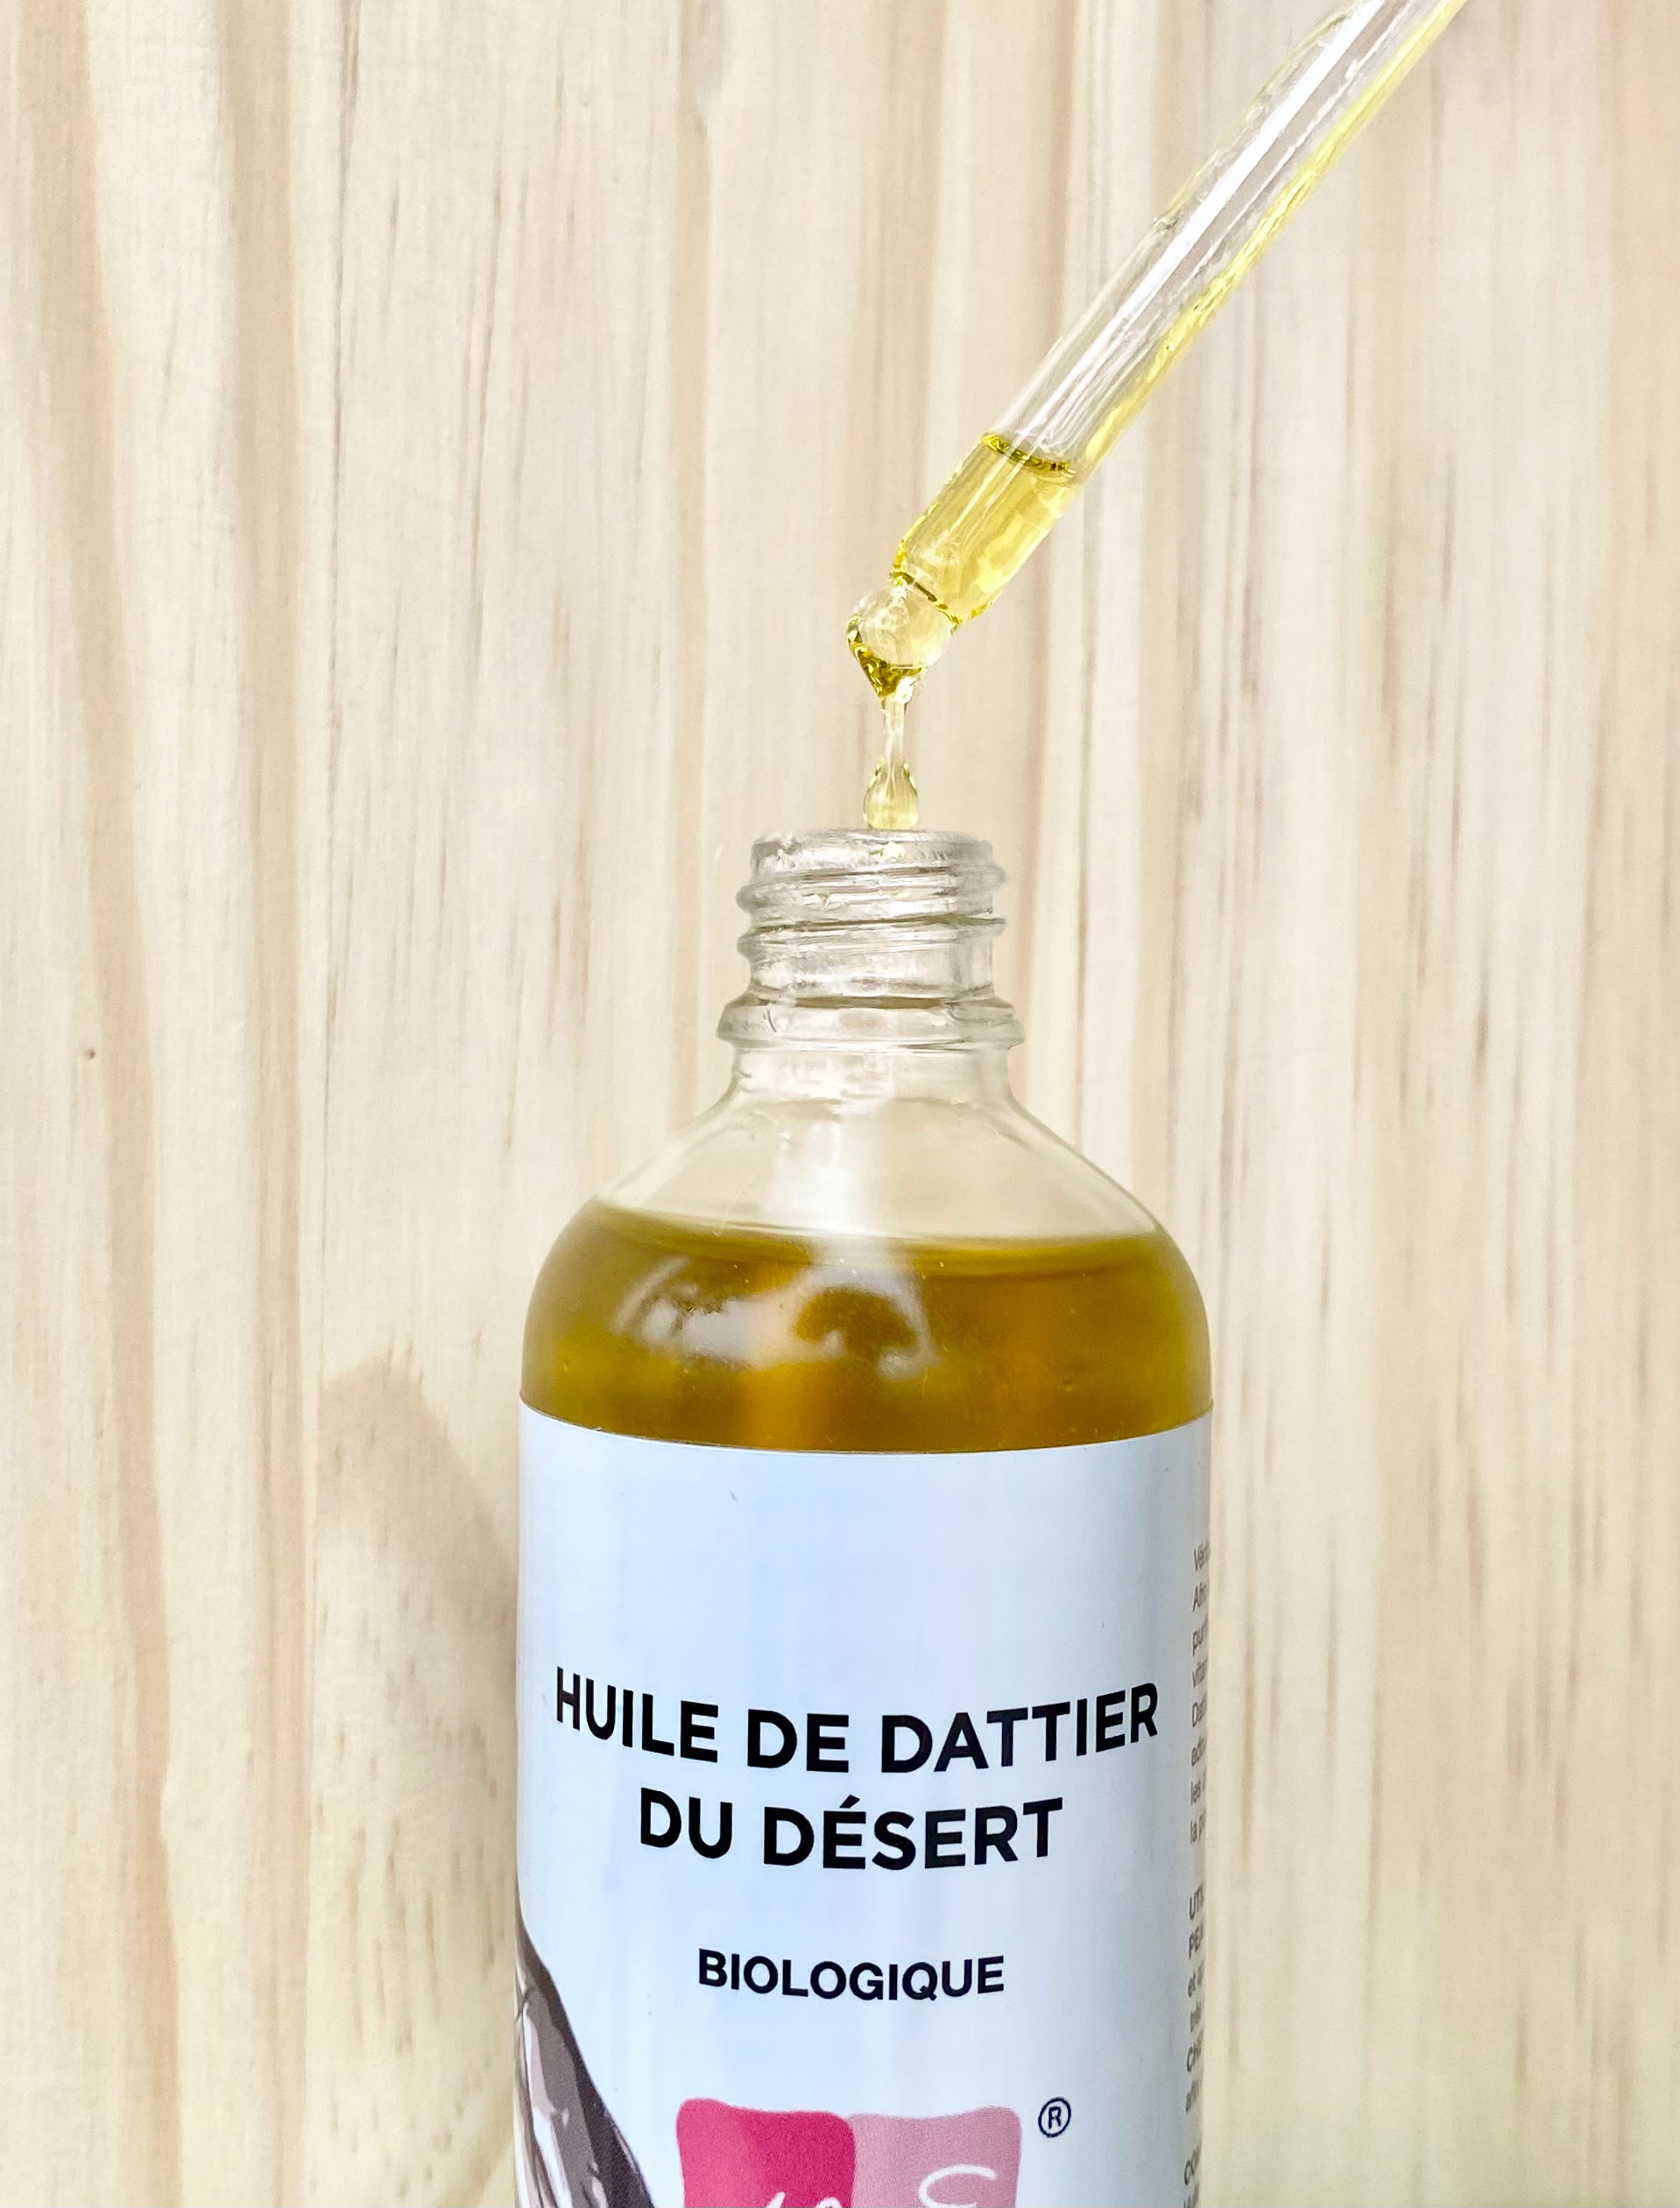 Desert date oil